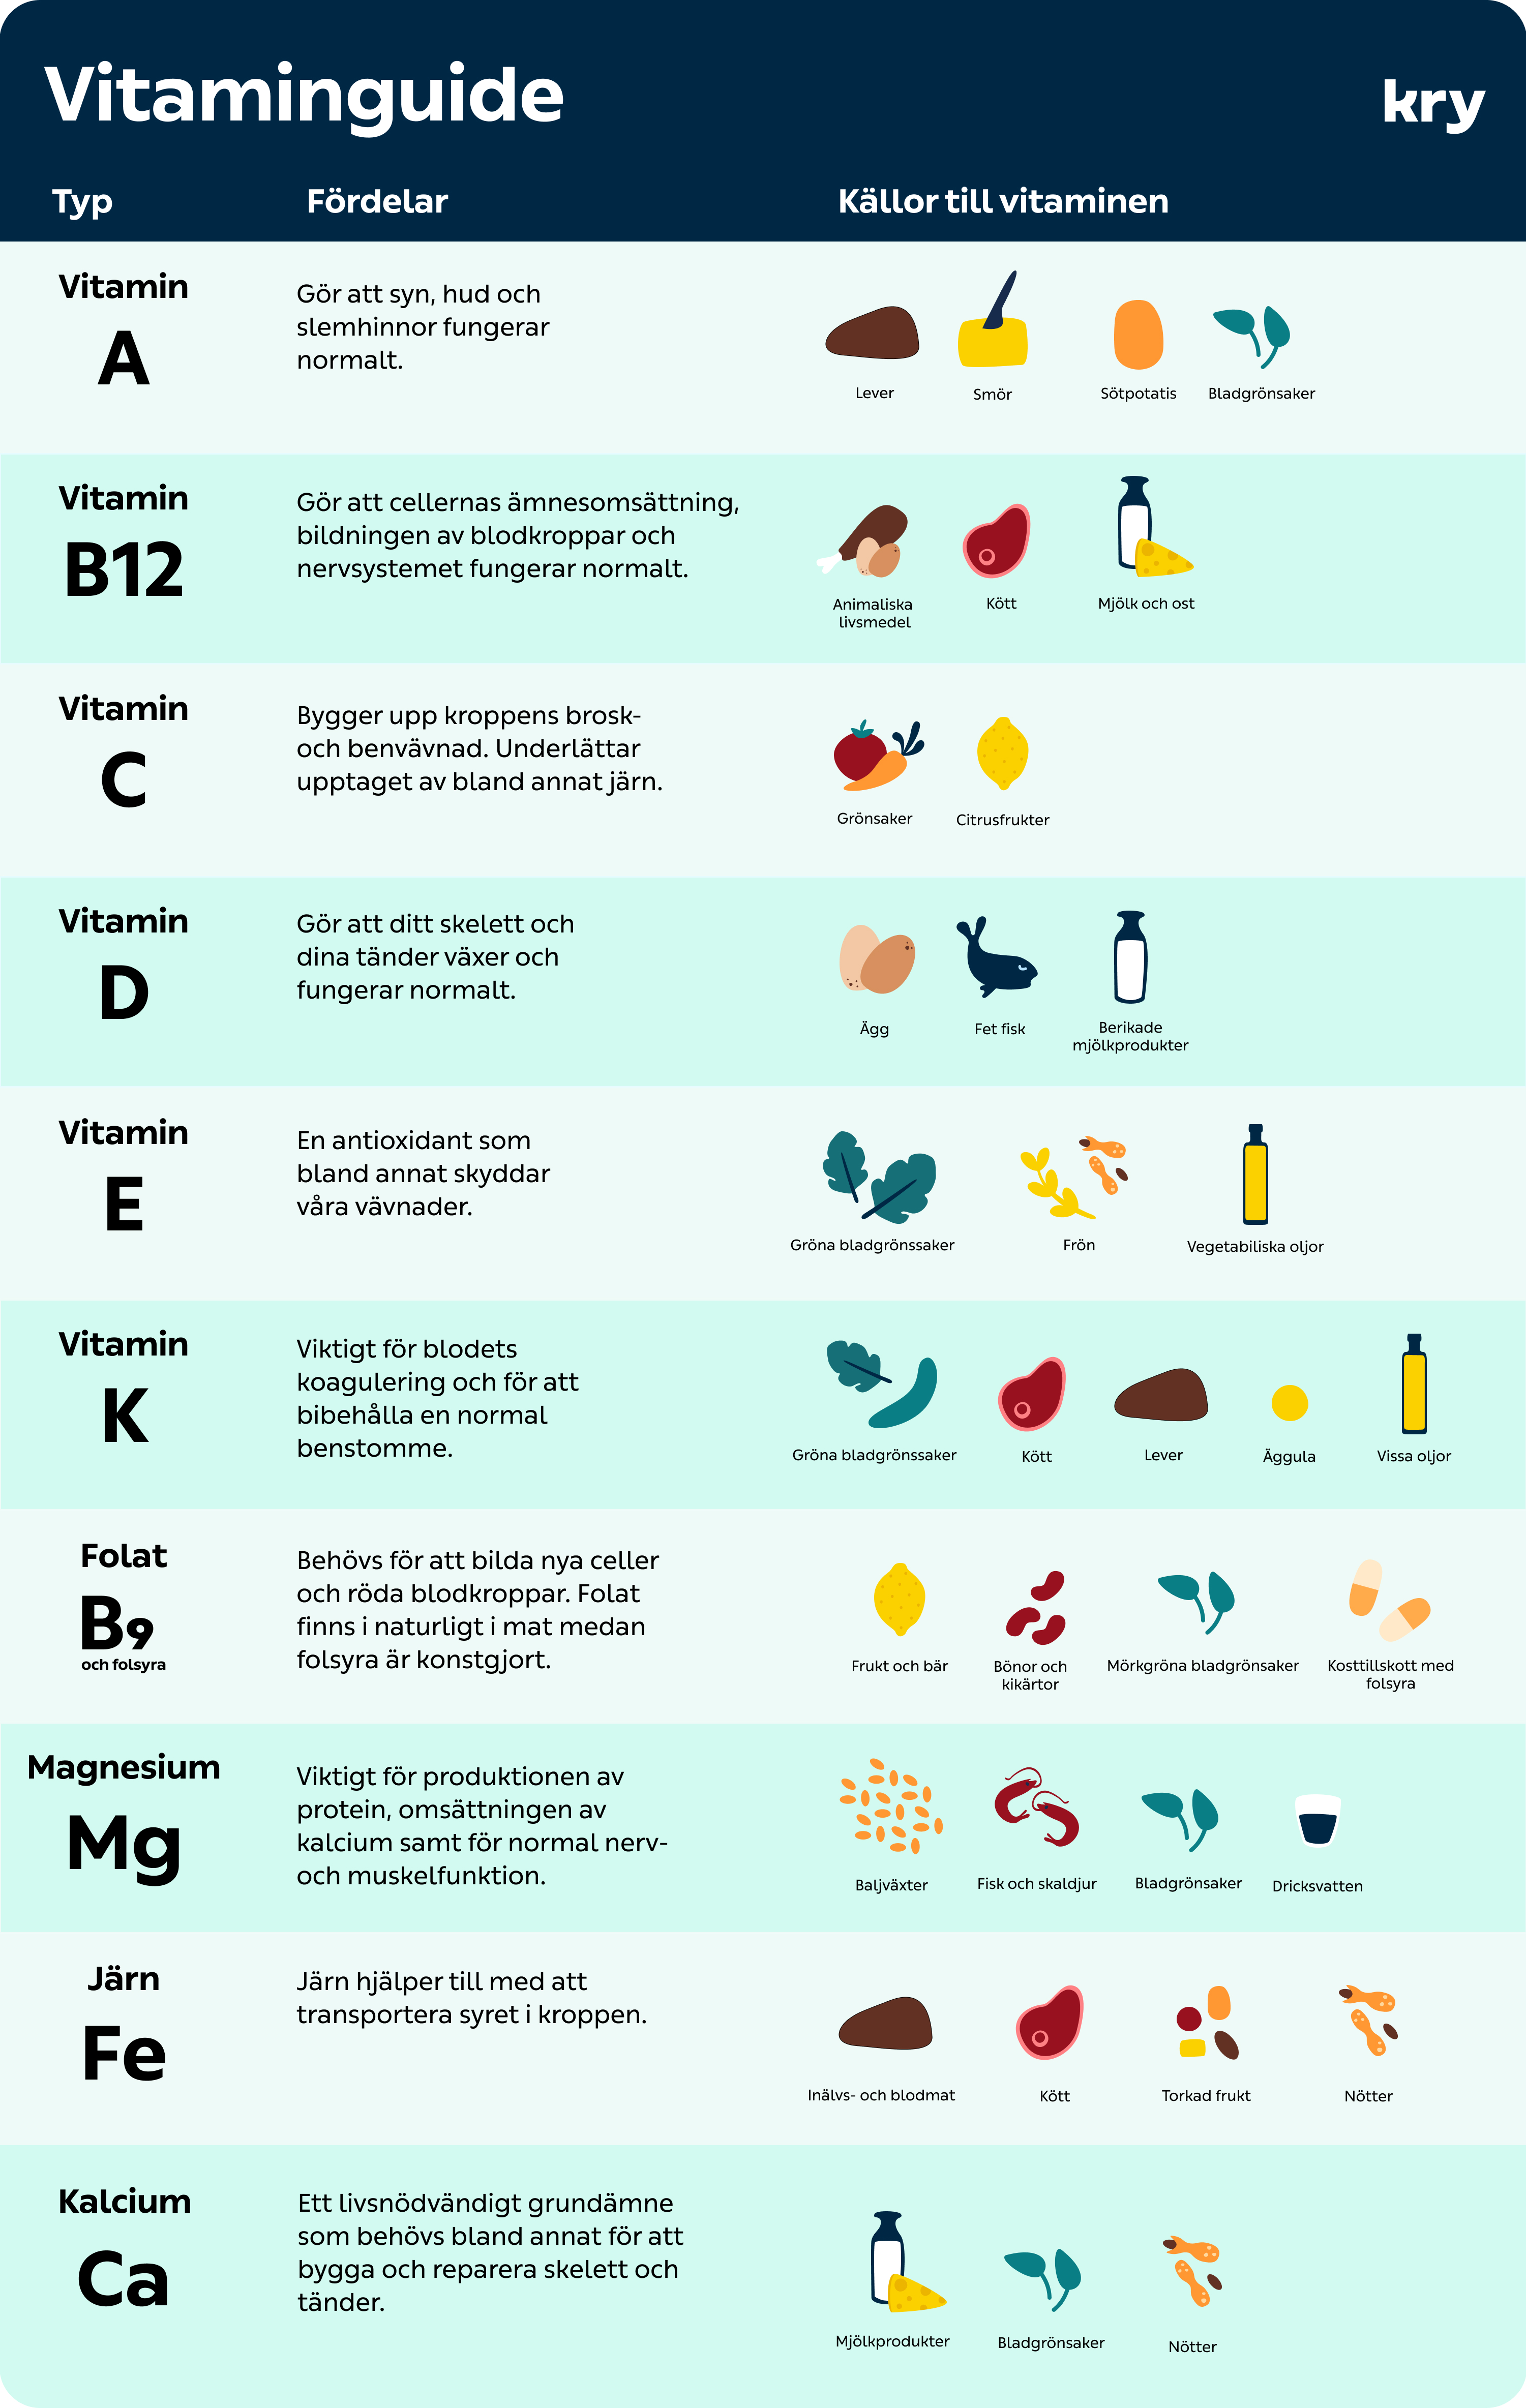 kry.se > Din hälsa > Vilka vitaminer behöver jag? > Chart